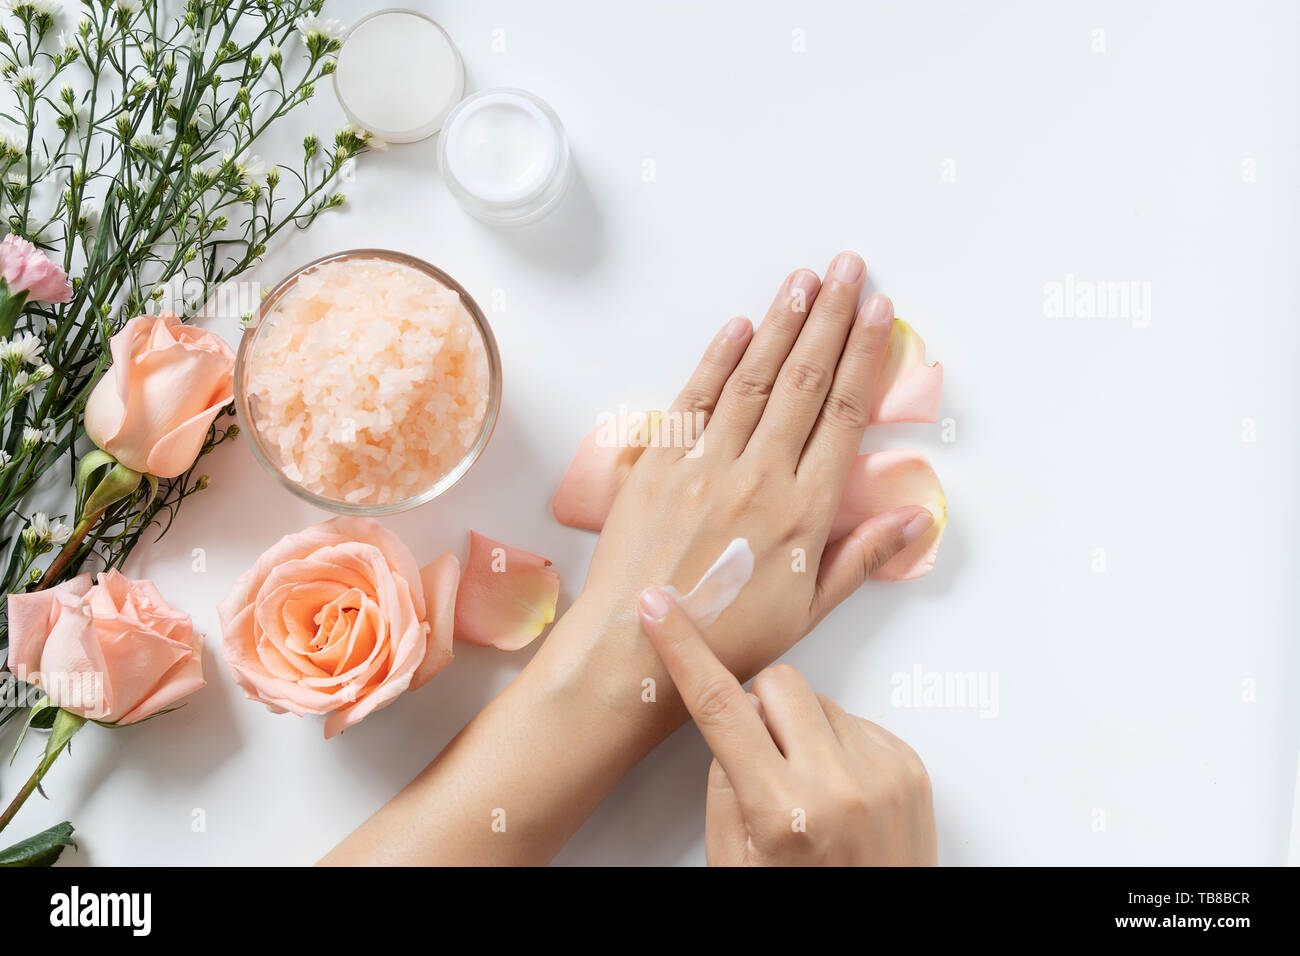 Natürliche Hautpflege Konzept. Frau Weiß Creme auf die Hände auftragen auf weißem Hintergrund mit Jar von kosmetischen Creme, Salz Spa Peeling, rosa und weißen Blüten Stockfoto